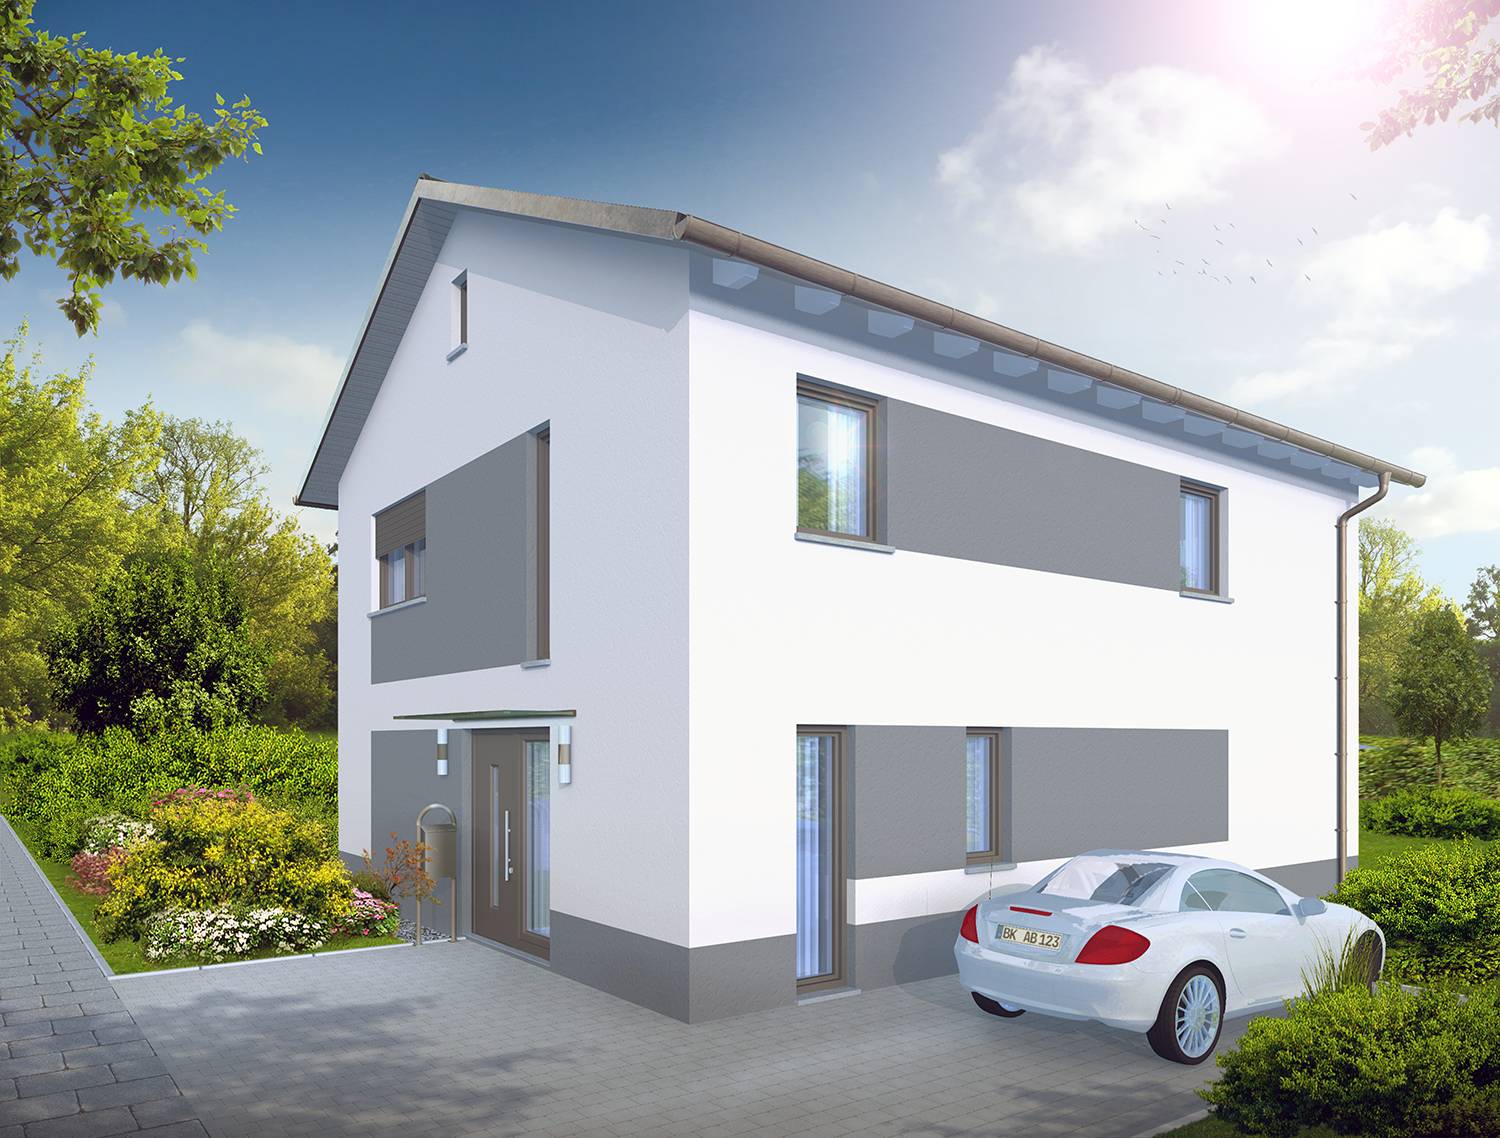 Architekturvisualisierung der Eingangssituation des Neubaus eines Einfamilienhauses. Visualisiert für die Firma R+S Immobilien GmbH aus Oberasbach/Bayern (Jahr 2022)